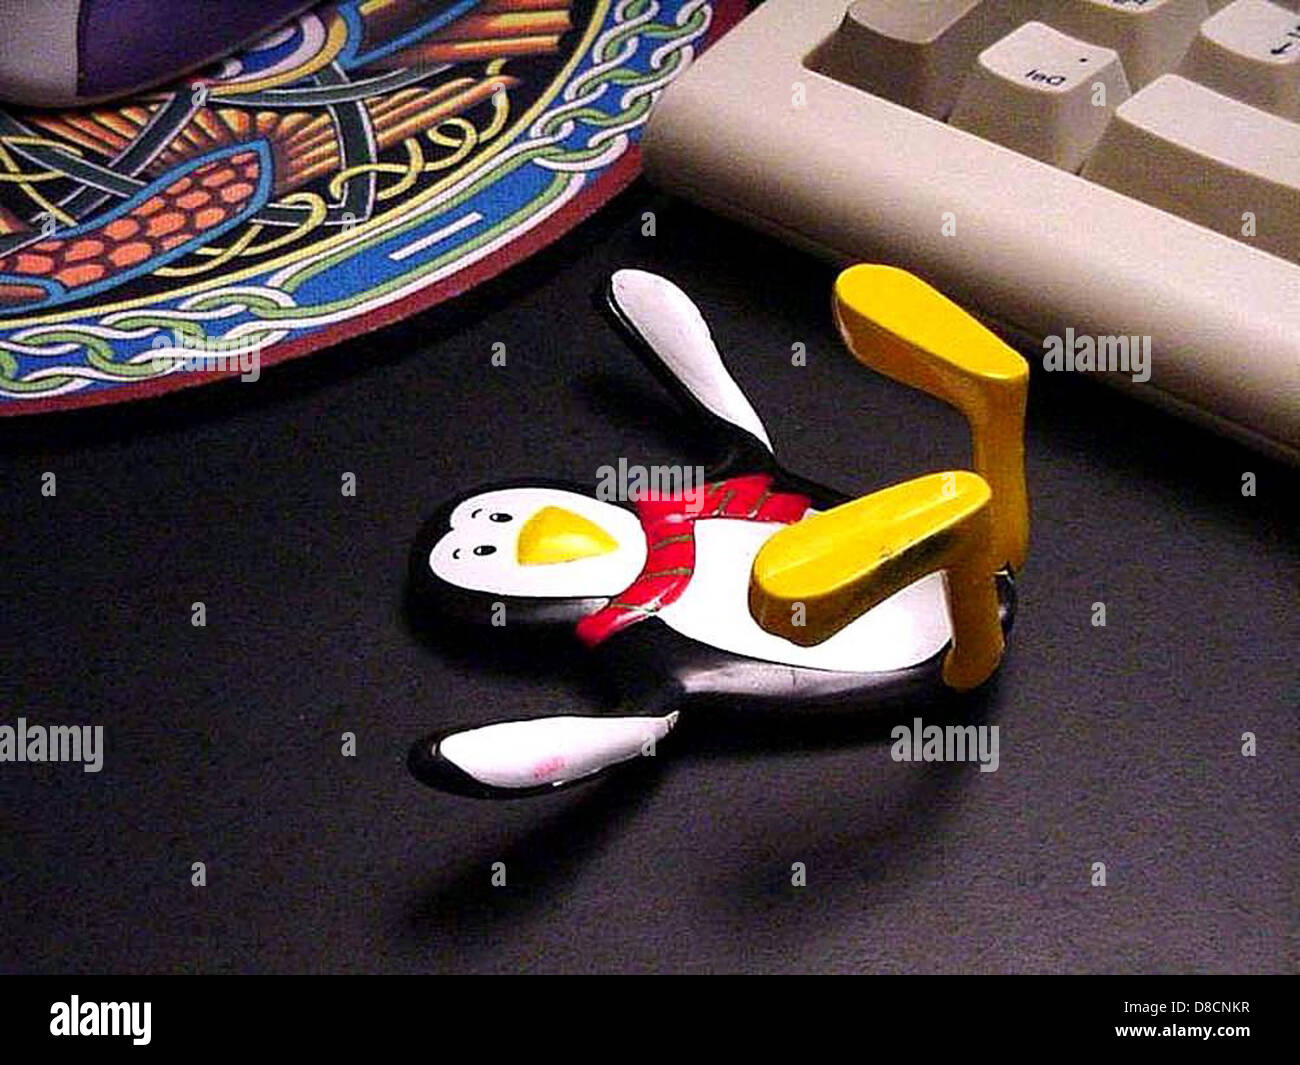 Gumby penguin toy. Stock Photo